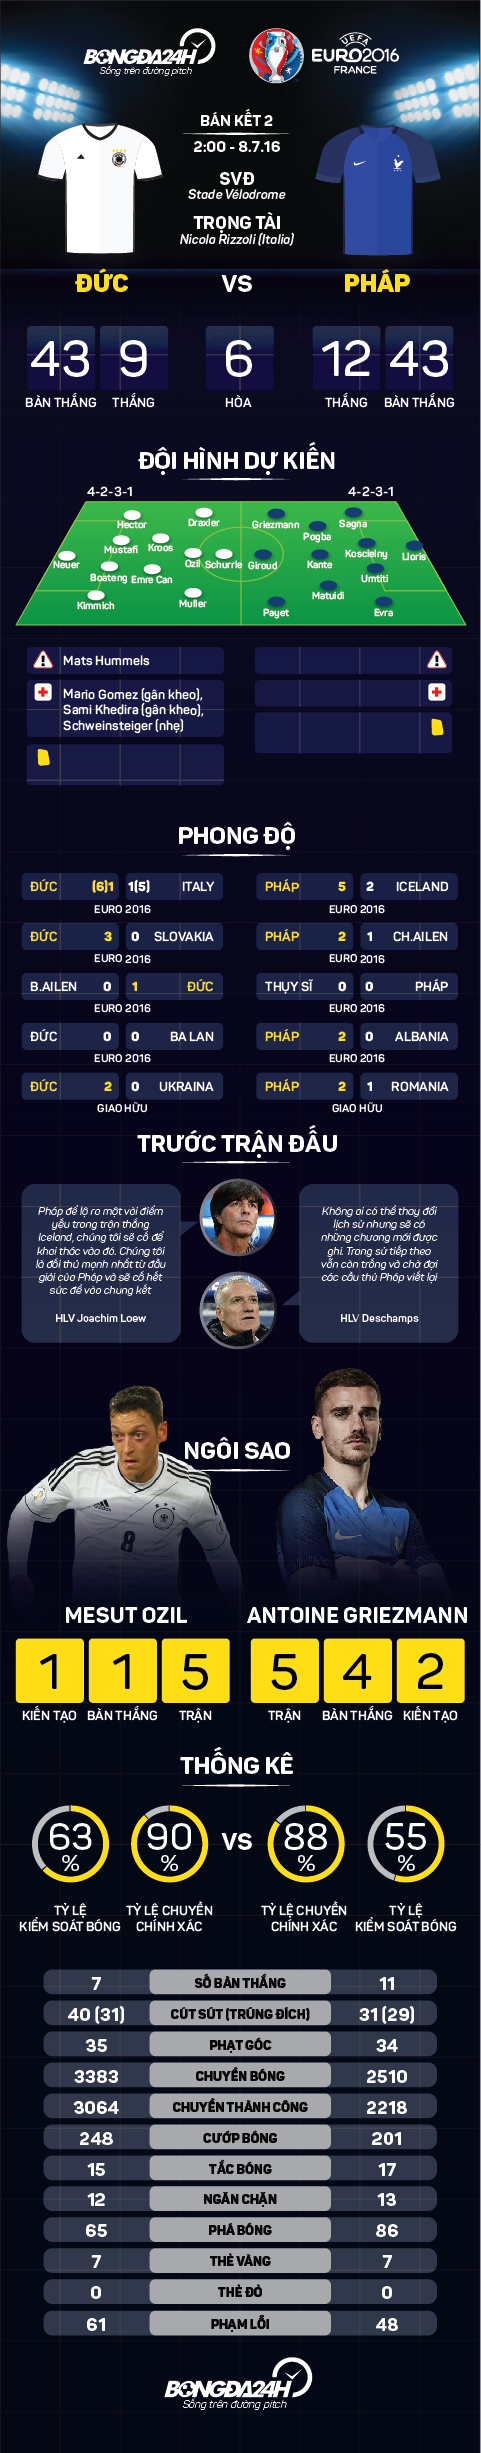 Info preview tran Duc vs Phap